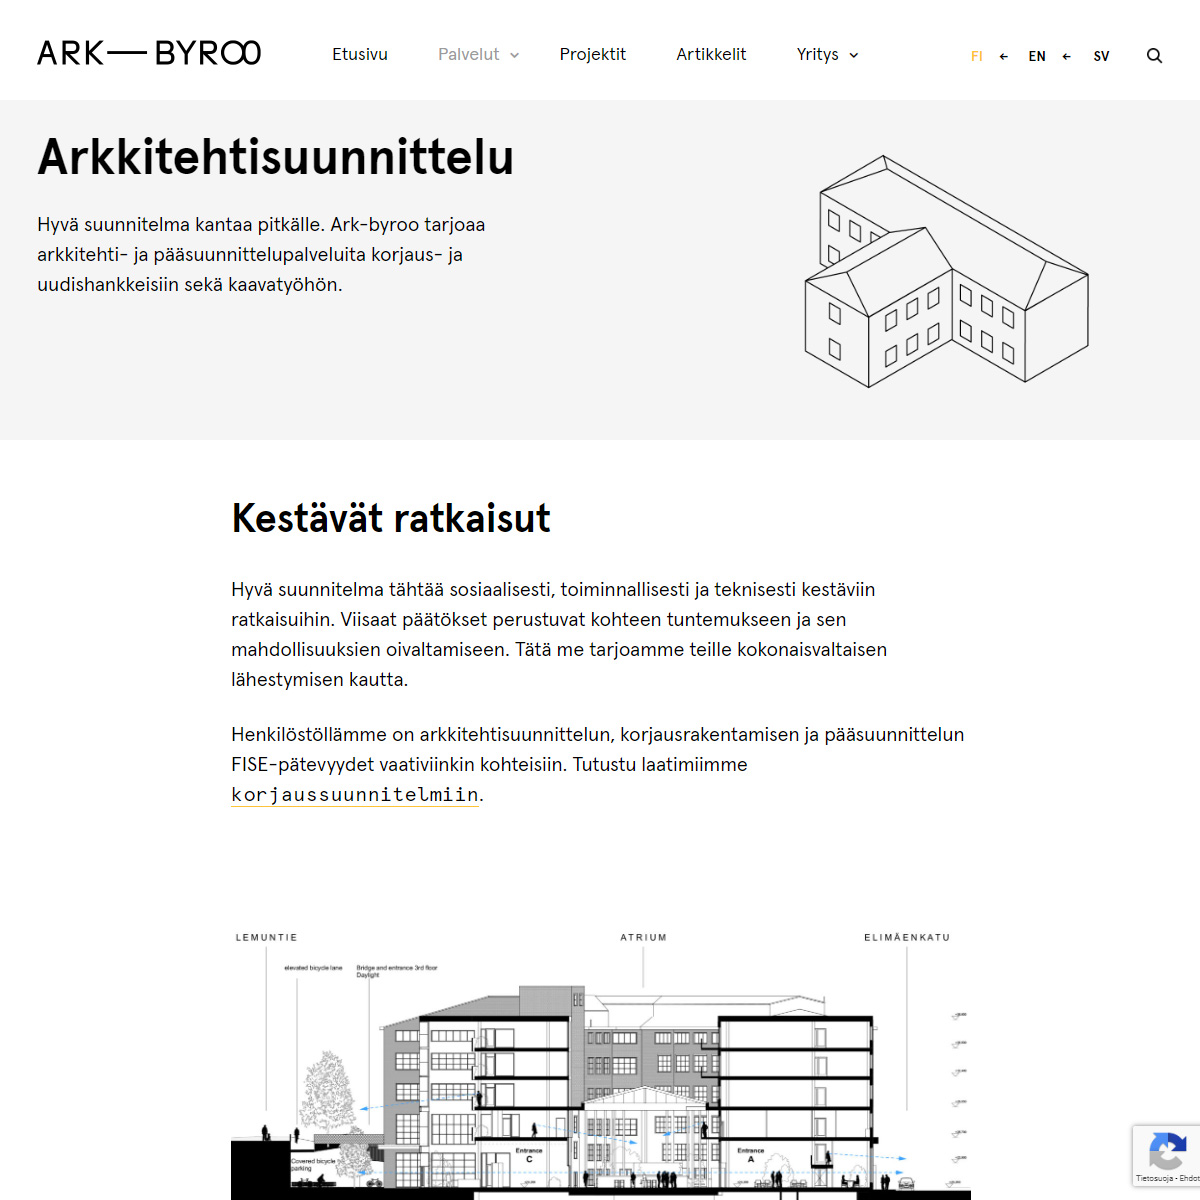 Ark-Byroo kotisivut - Arkkitehtisuunnittelu